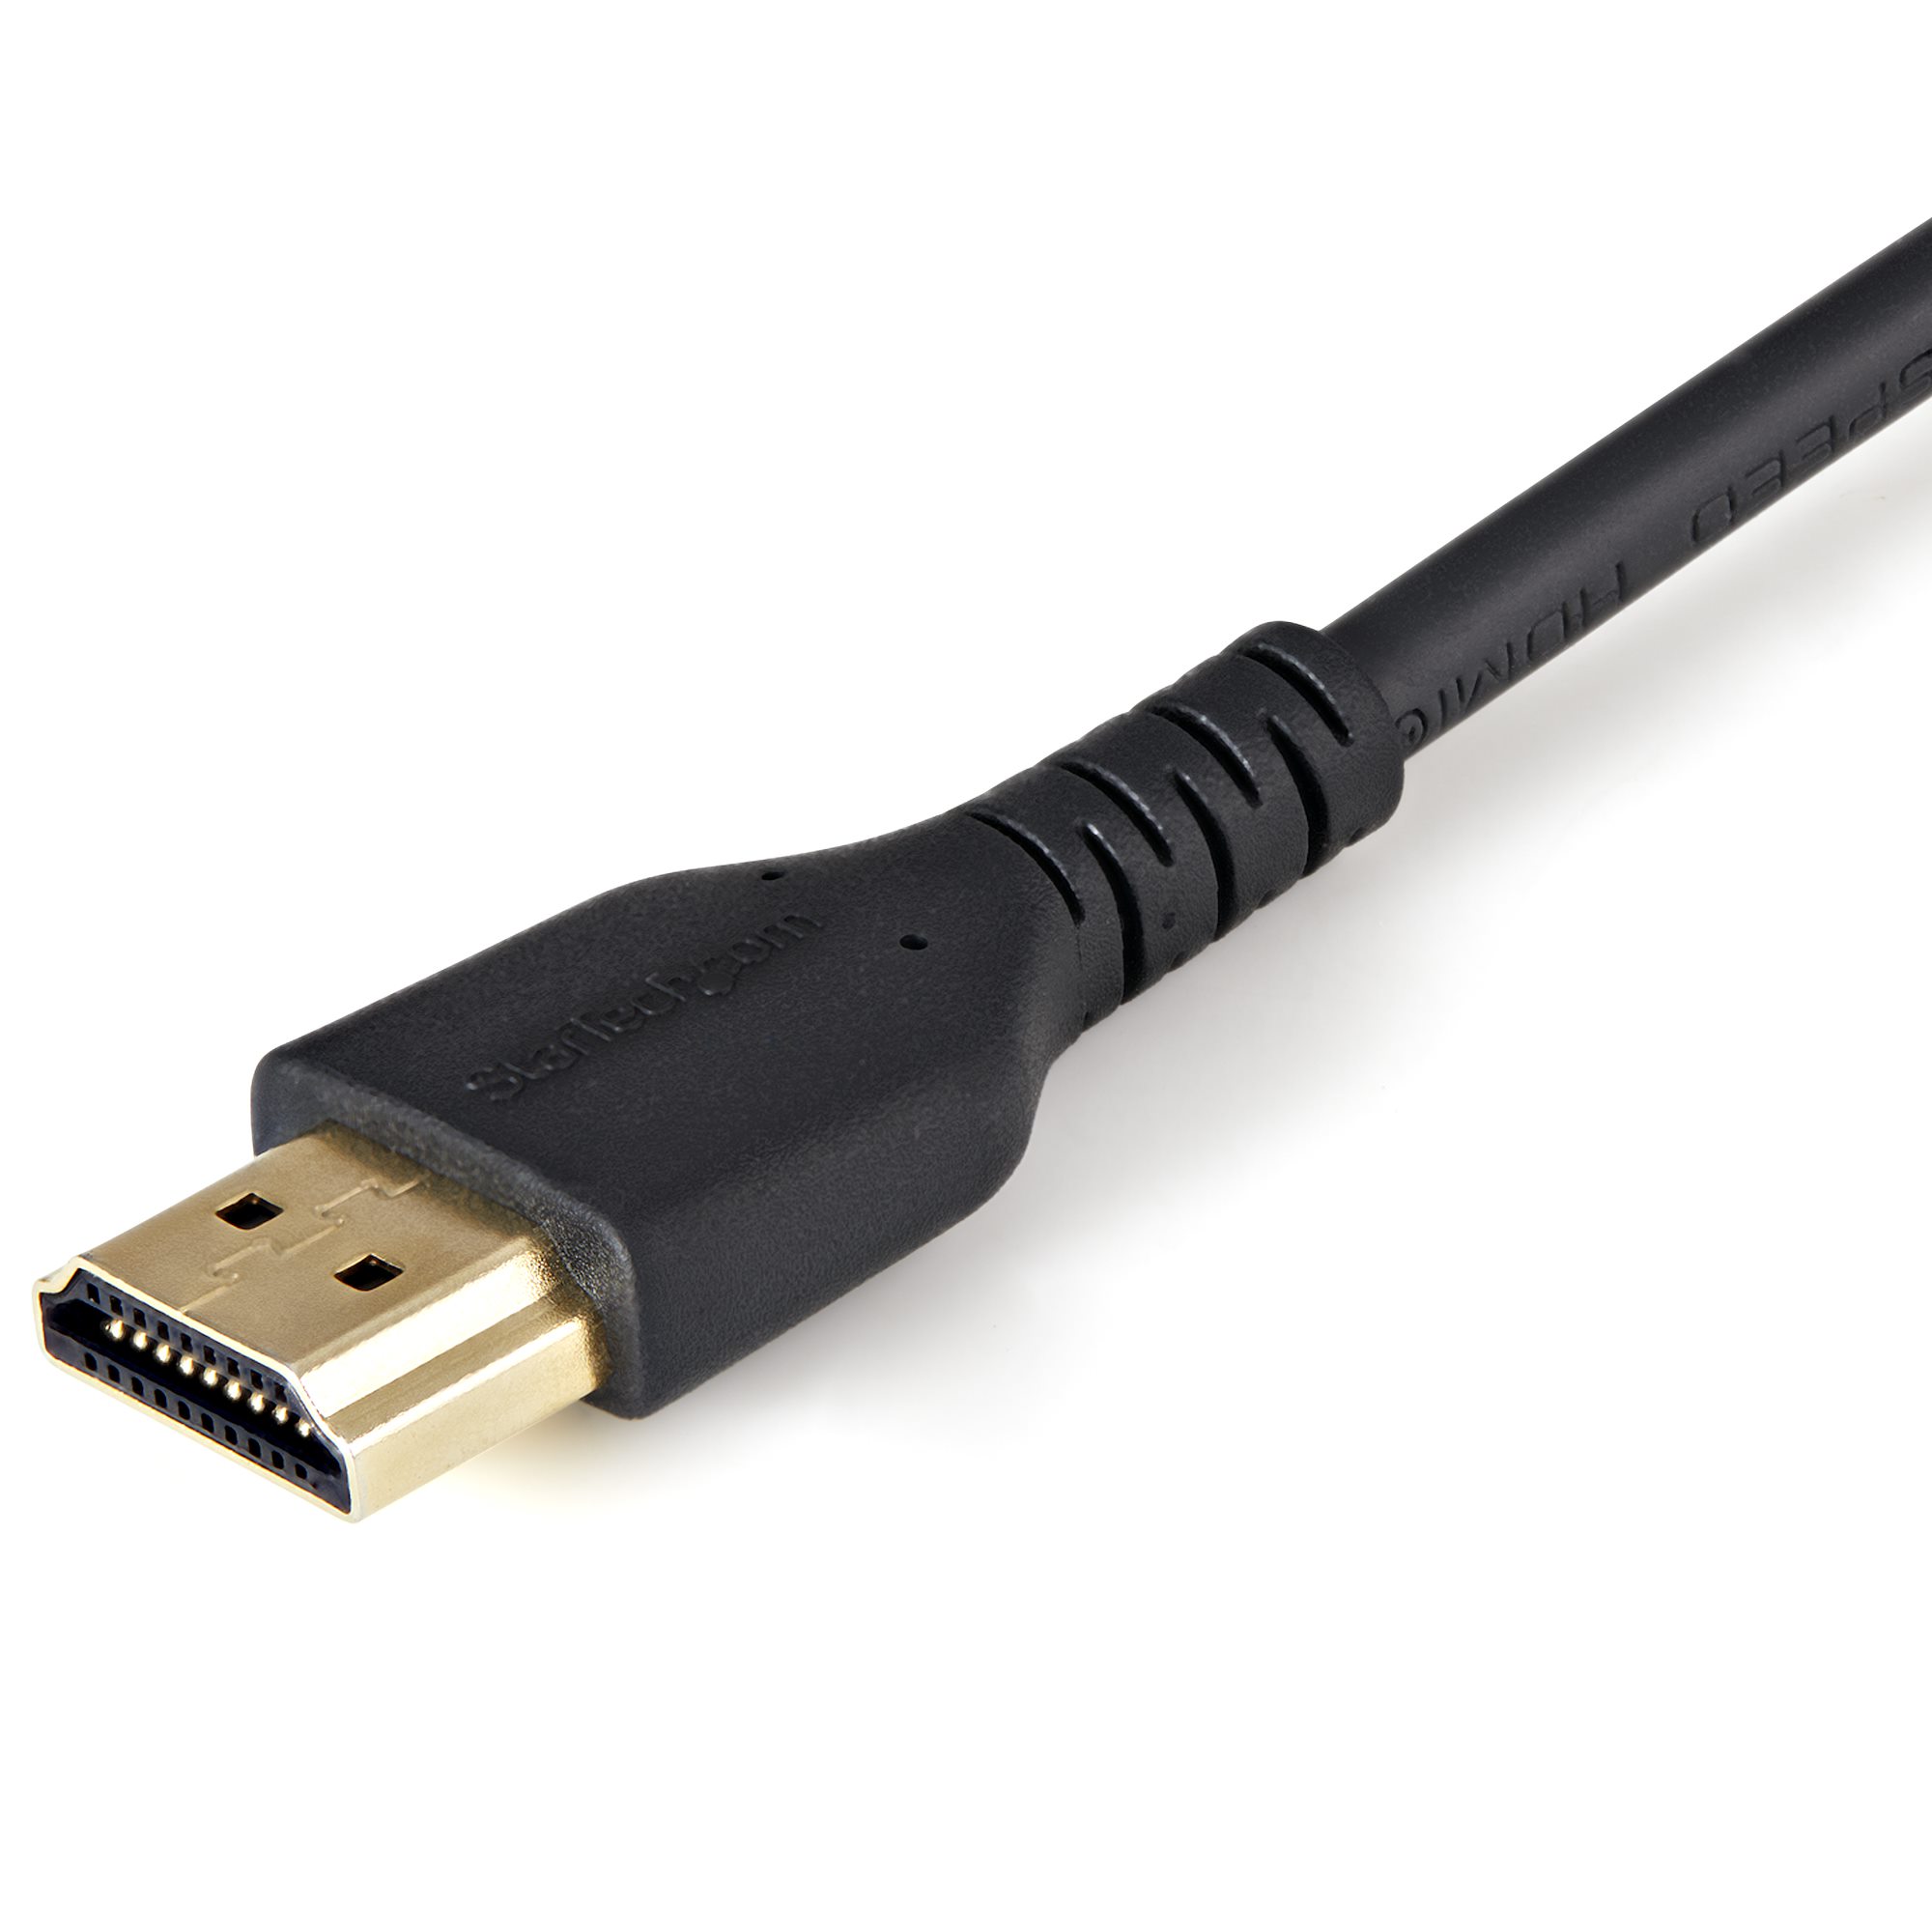 Câble HDMI Mince de 1m avec Vis de Verrouillage - 4K 60Hz HDR - Câble pour  Moniteur HDMI 2.0 Haute Vitesse avec Connecteur à Vis de Verrouillage pour